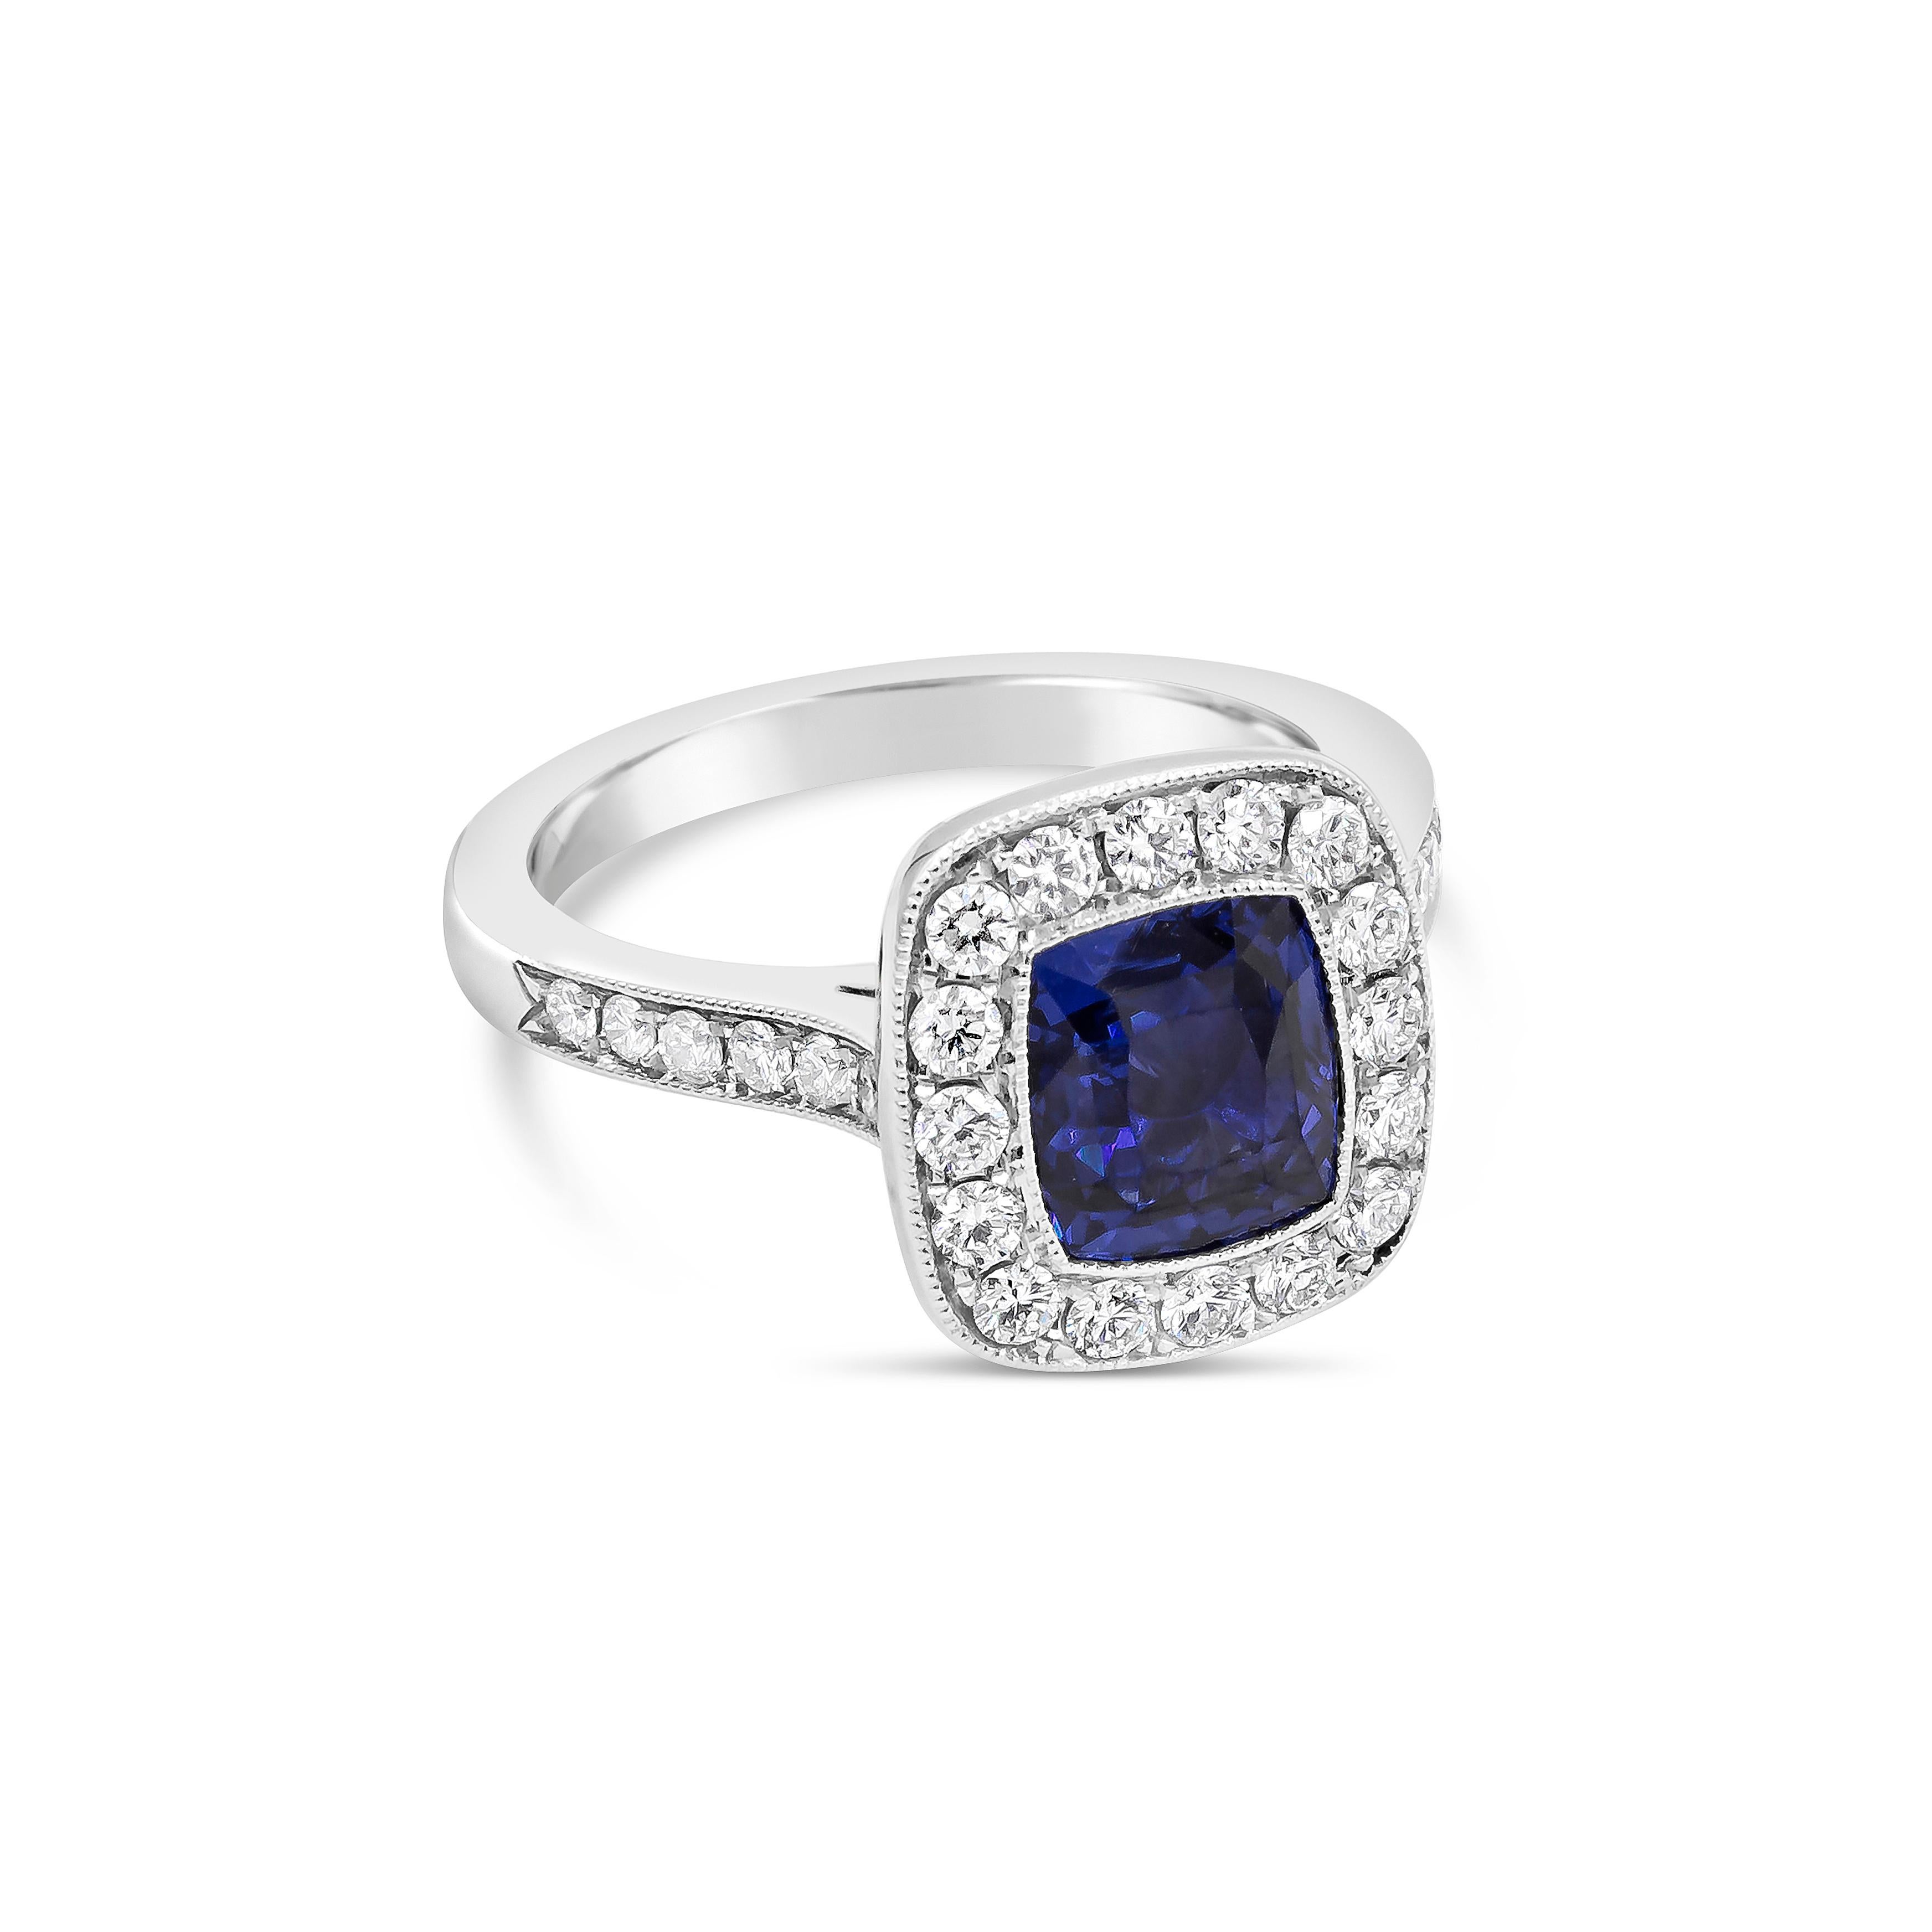 Ce saphir bleu de 2,11 carats, taillé en coussin, est certifié par le GIA comme étant de couleur BLEUE et ne présentant aucune indication de traitement thermique. Le saphir est entouré d'une rangée de diamants ronds de taille brillant, dans une